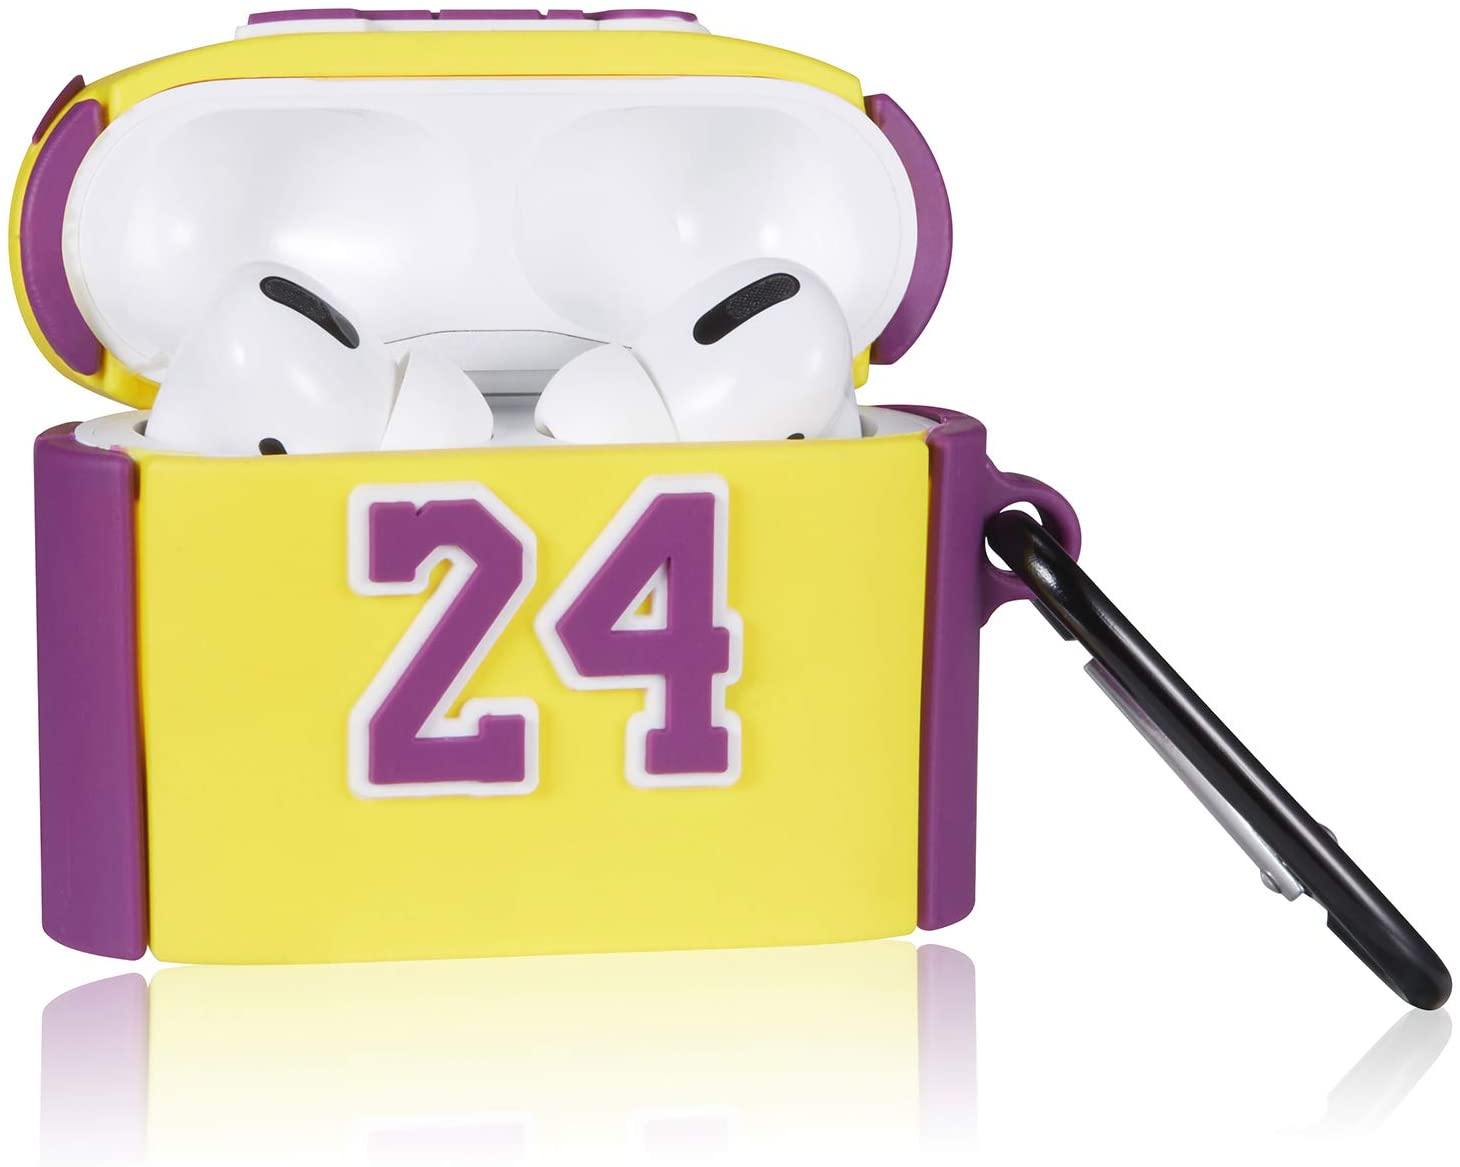 Lakers Kobe jersey AirPods case - Milottie